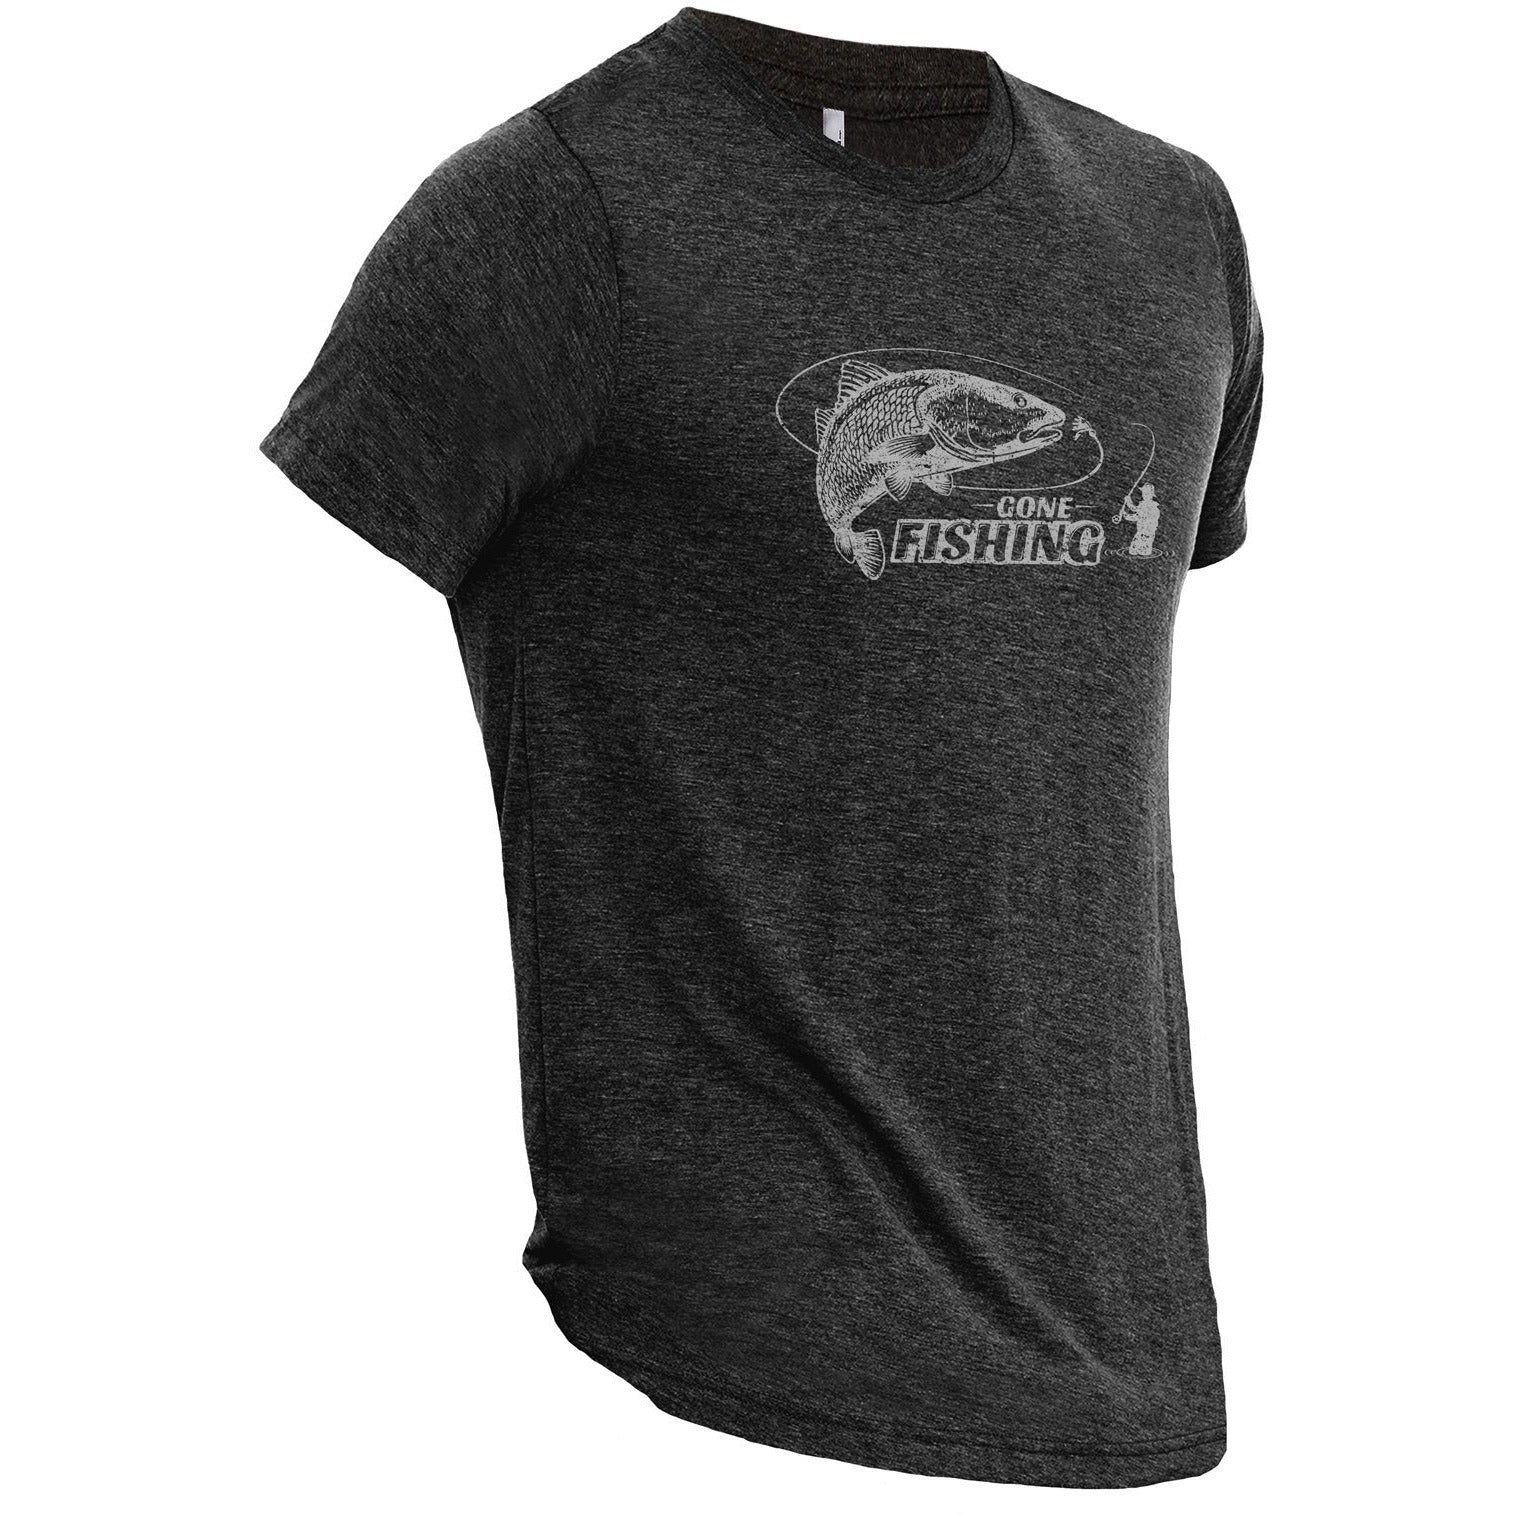 Gone Fishing Men's T-Shirt – The Fishing Shop